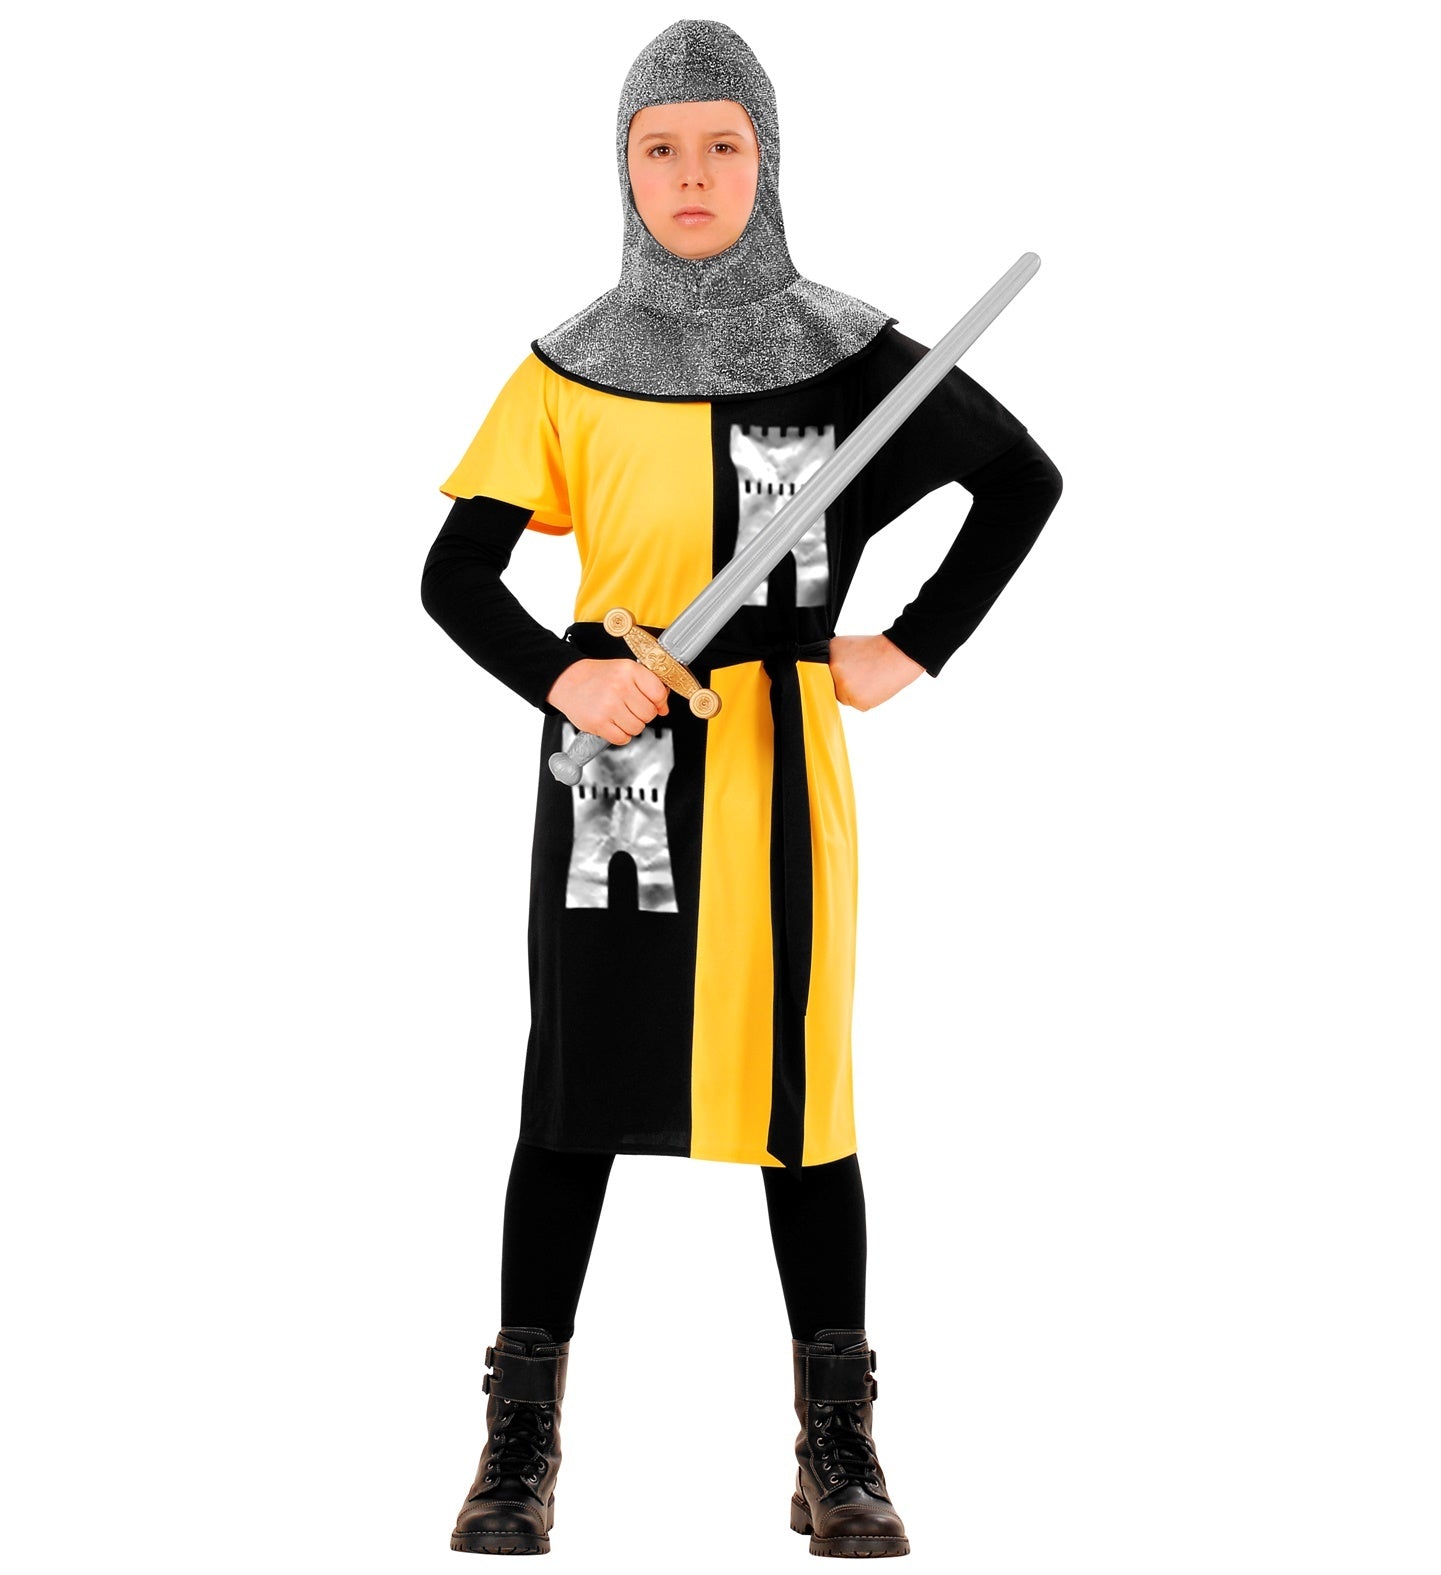 Widmann - Middeleeuwse & Renaissance Strijders Kostuum - Jonge Middeleeuwse Ridder Van Het Geelkasteel - Jongen - geel,zwart,zilver - Maat 128 - Carnavalskleding - Verkleedkleding